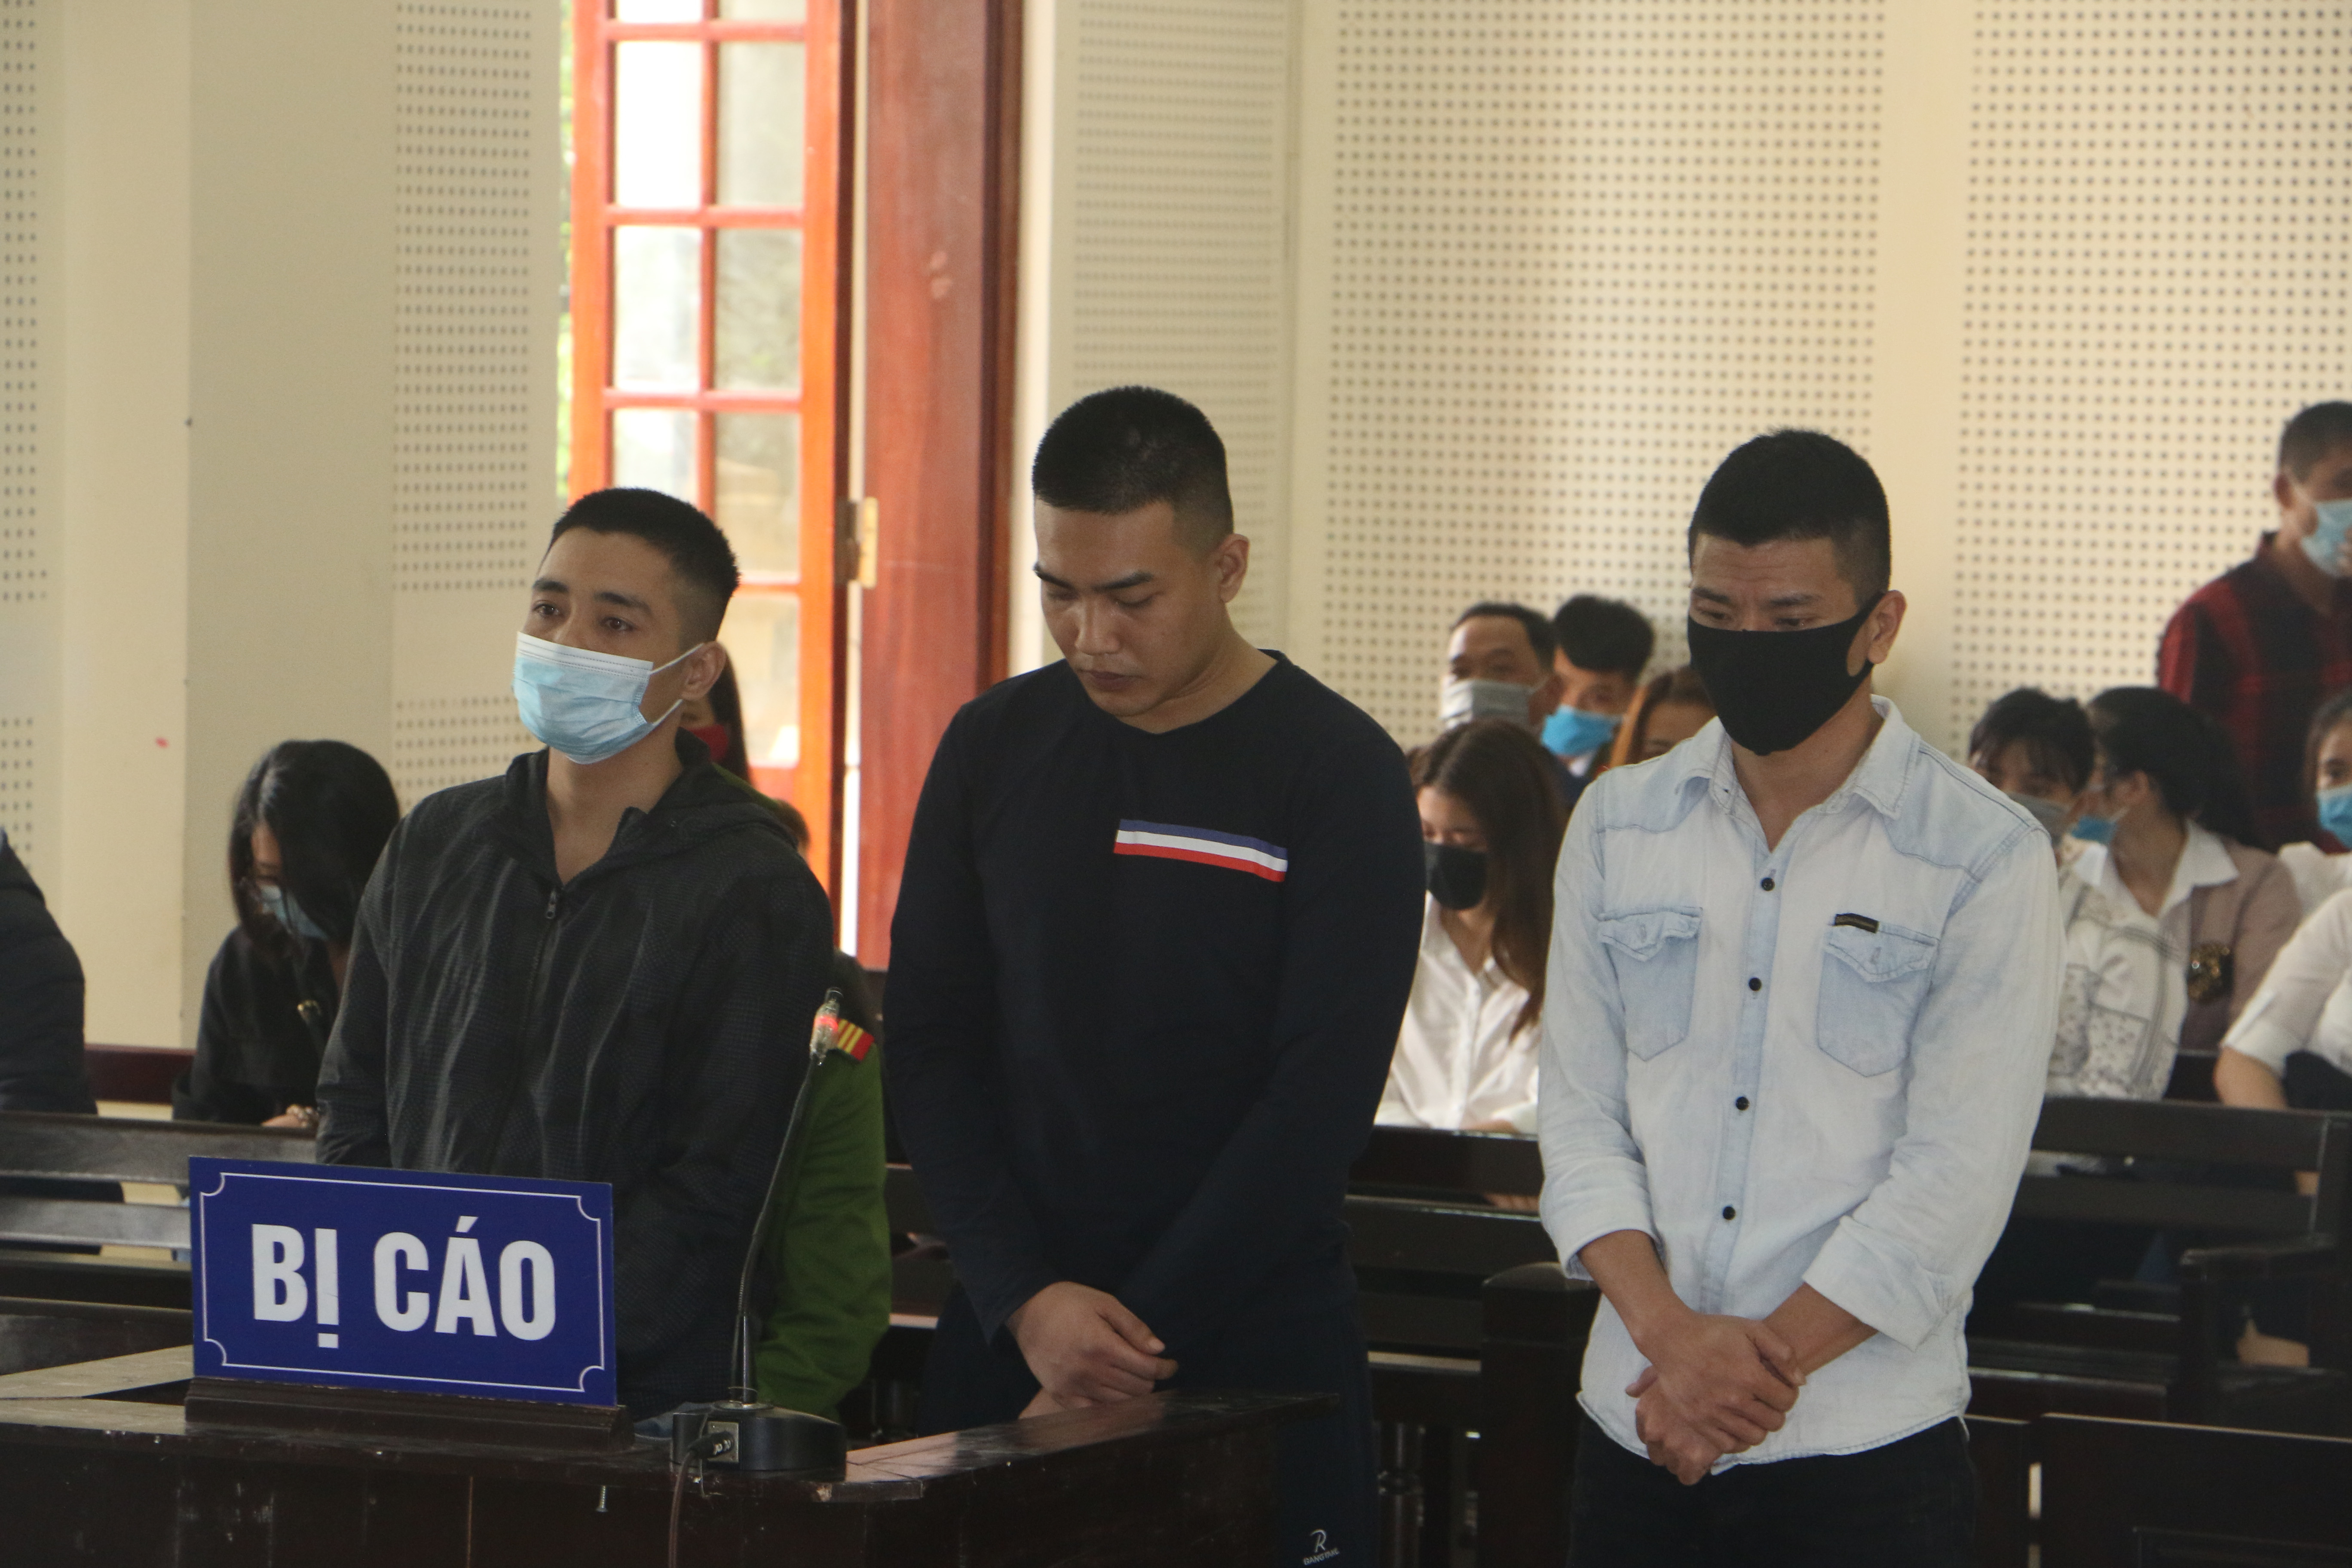 Ngô Thanh Long, Ngô Viết Thành Vinh, Nguyễn Thành Long tại phiên tòa (từ trái sang phải). Ảnh: An Quỳnh.